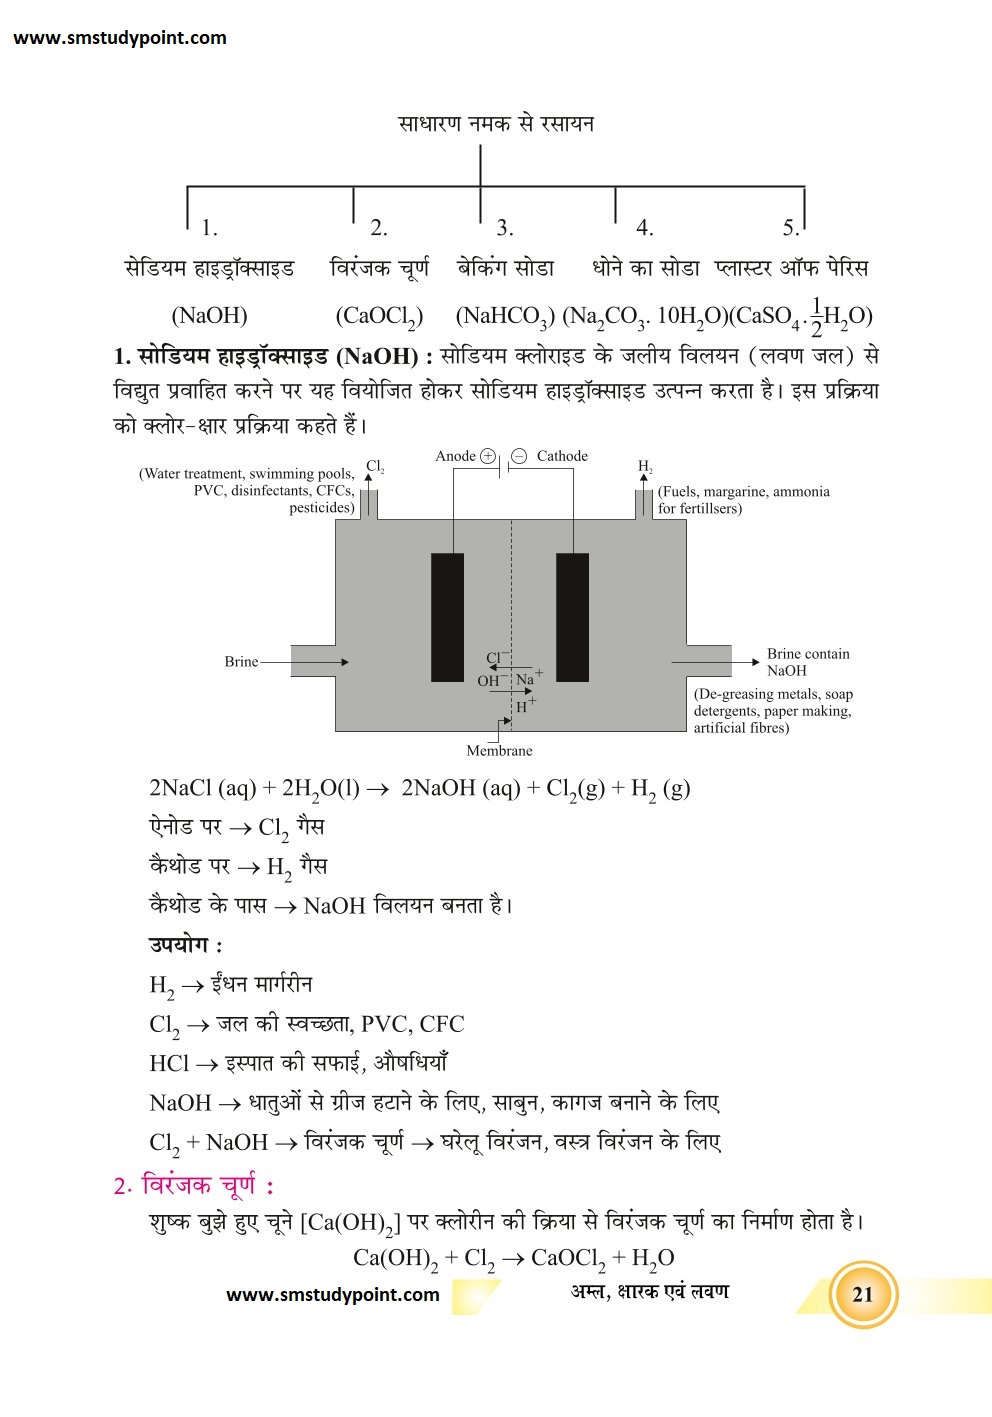 Bihar Board Class 10th Chemistry Notes | Acids, Bases and Salts | Class 10 Chemistry Chapter 2 Rivision Notes PDF | अम्ल, क्षार एवं लवण | बिहार बोर्ड क्लास 10वीं रसायनशास्त्र नोट्स | कक्षा 10 रसायन विज्ञान हिंदी में नोट्स